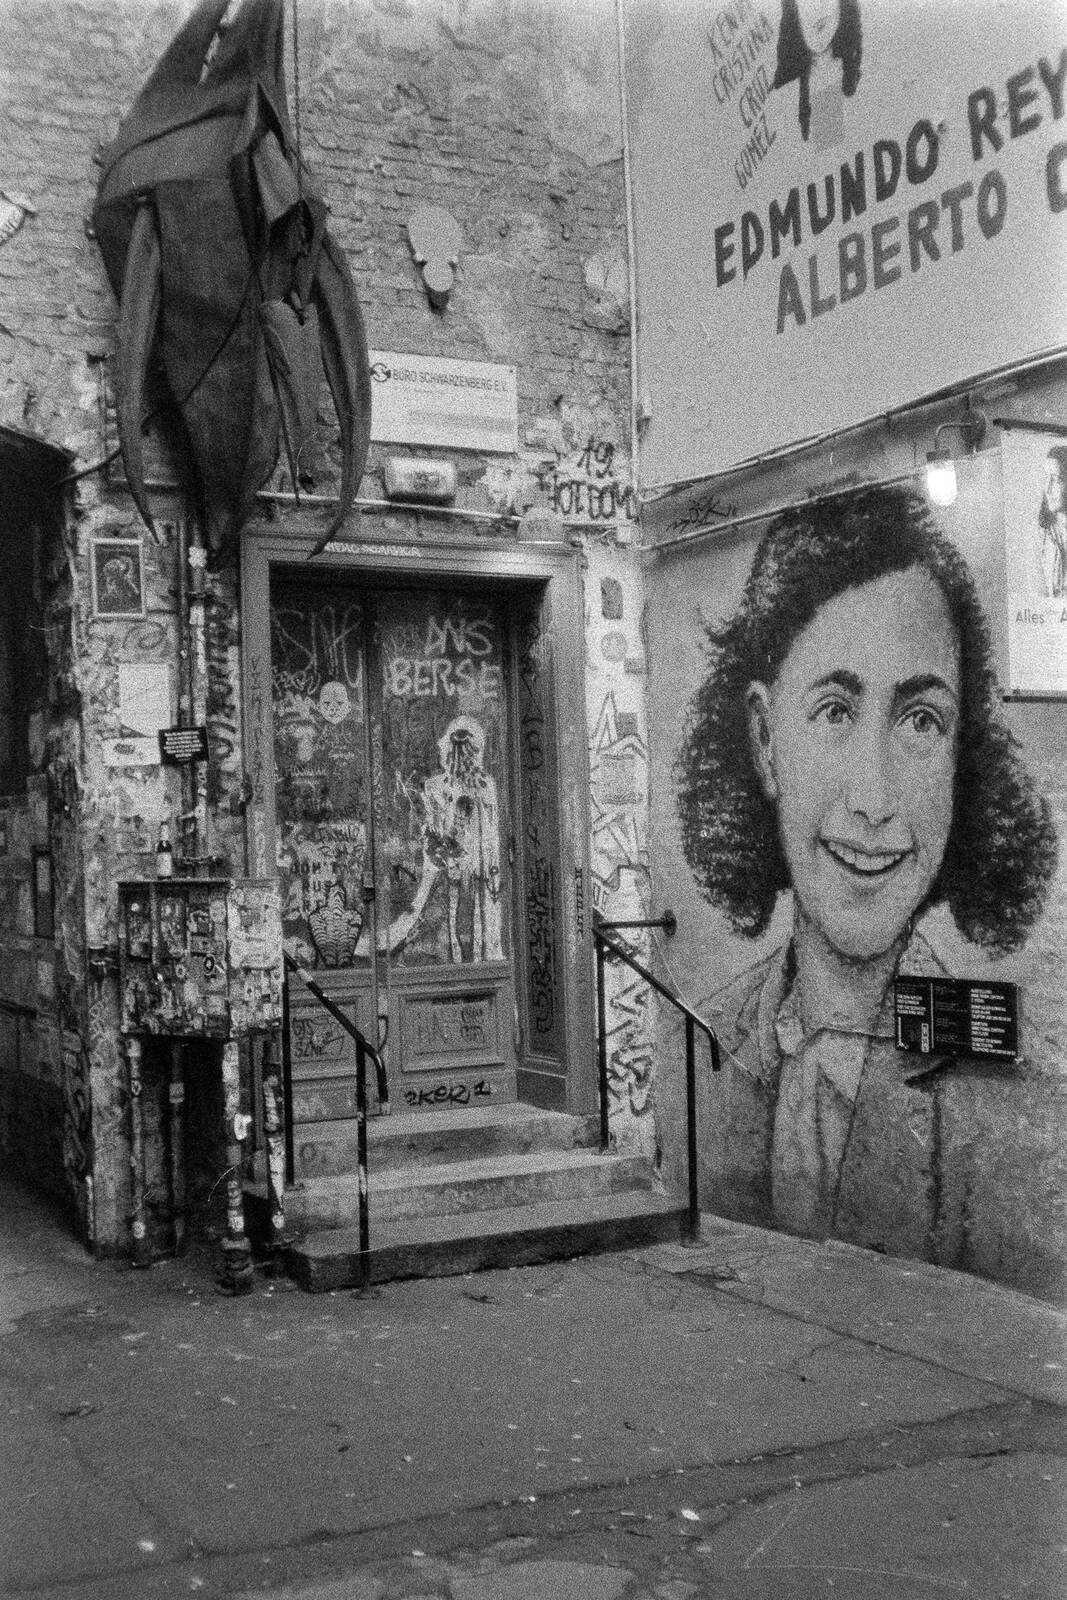 Image of Haus Schwarzenberg street-art alley by James Billings.